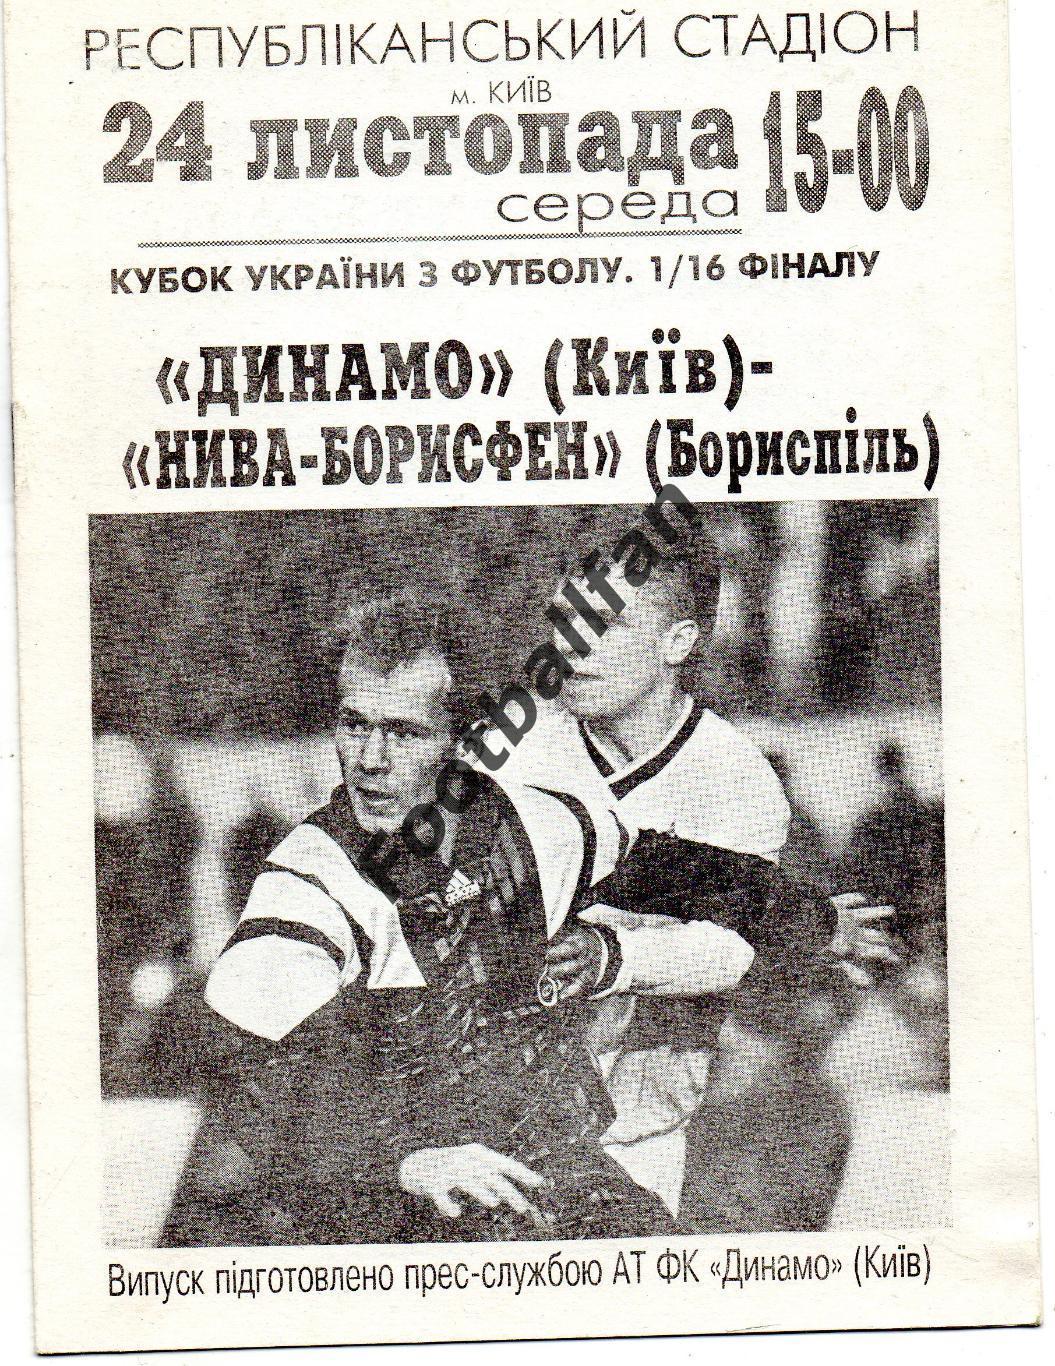 Динамо Киев - Нива-Борисфен Борисполь 24.11.1993 Кубок Украины